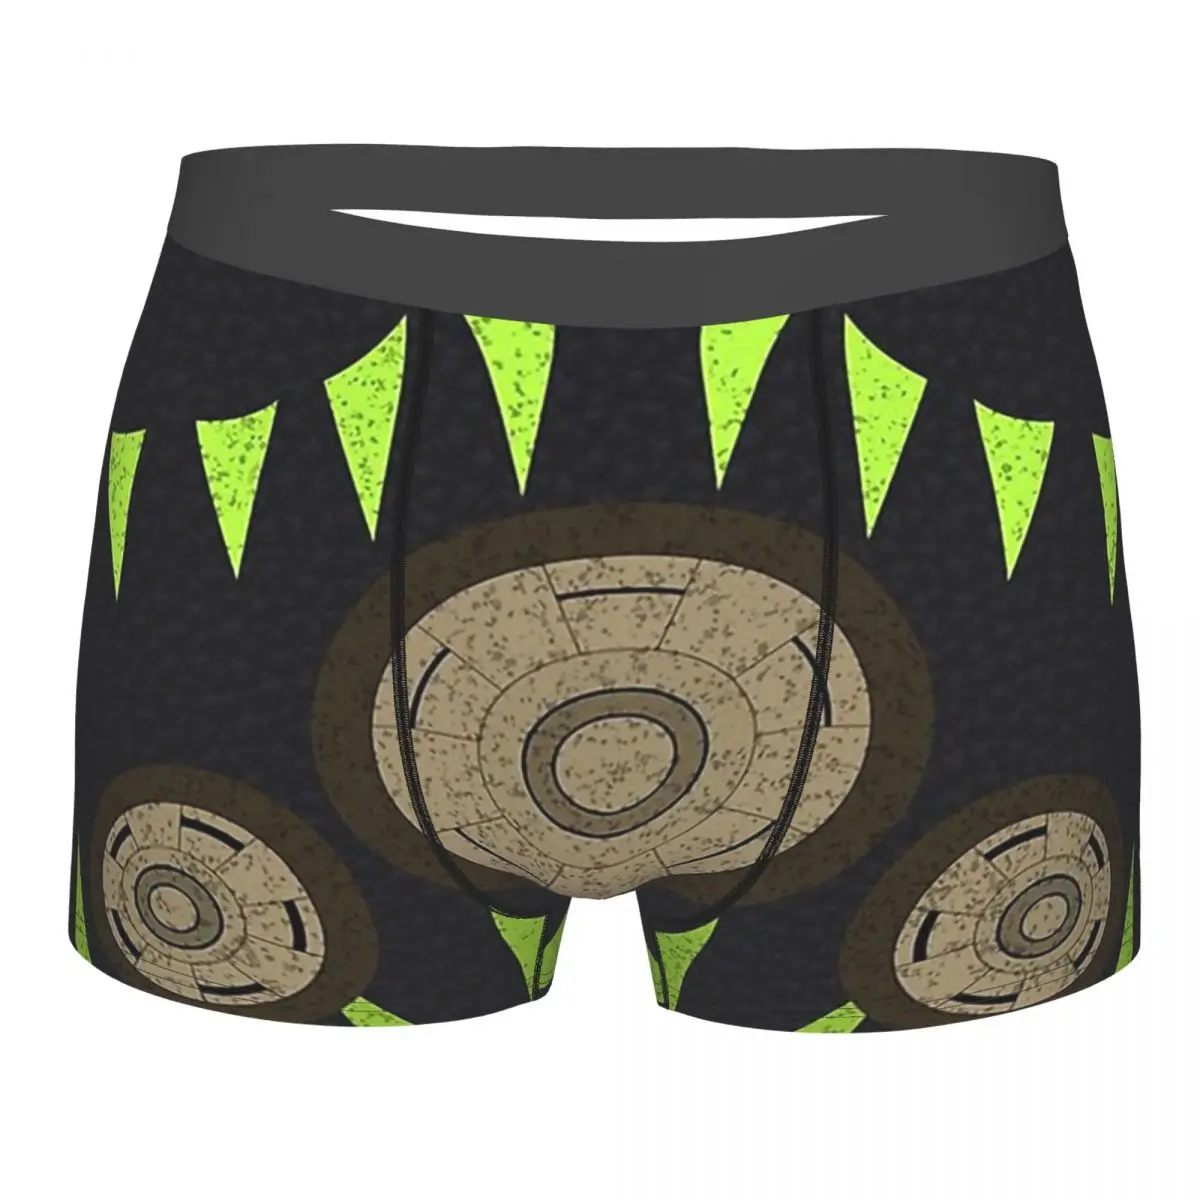 

Men's Panties Octane Men Boxer Underwear Cotton for Male Apex Legends Shooter Battle Royale Game Large Size Lot Soft